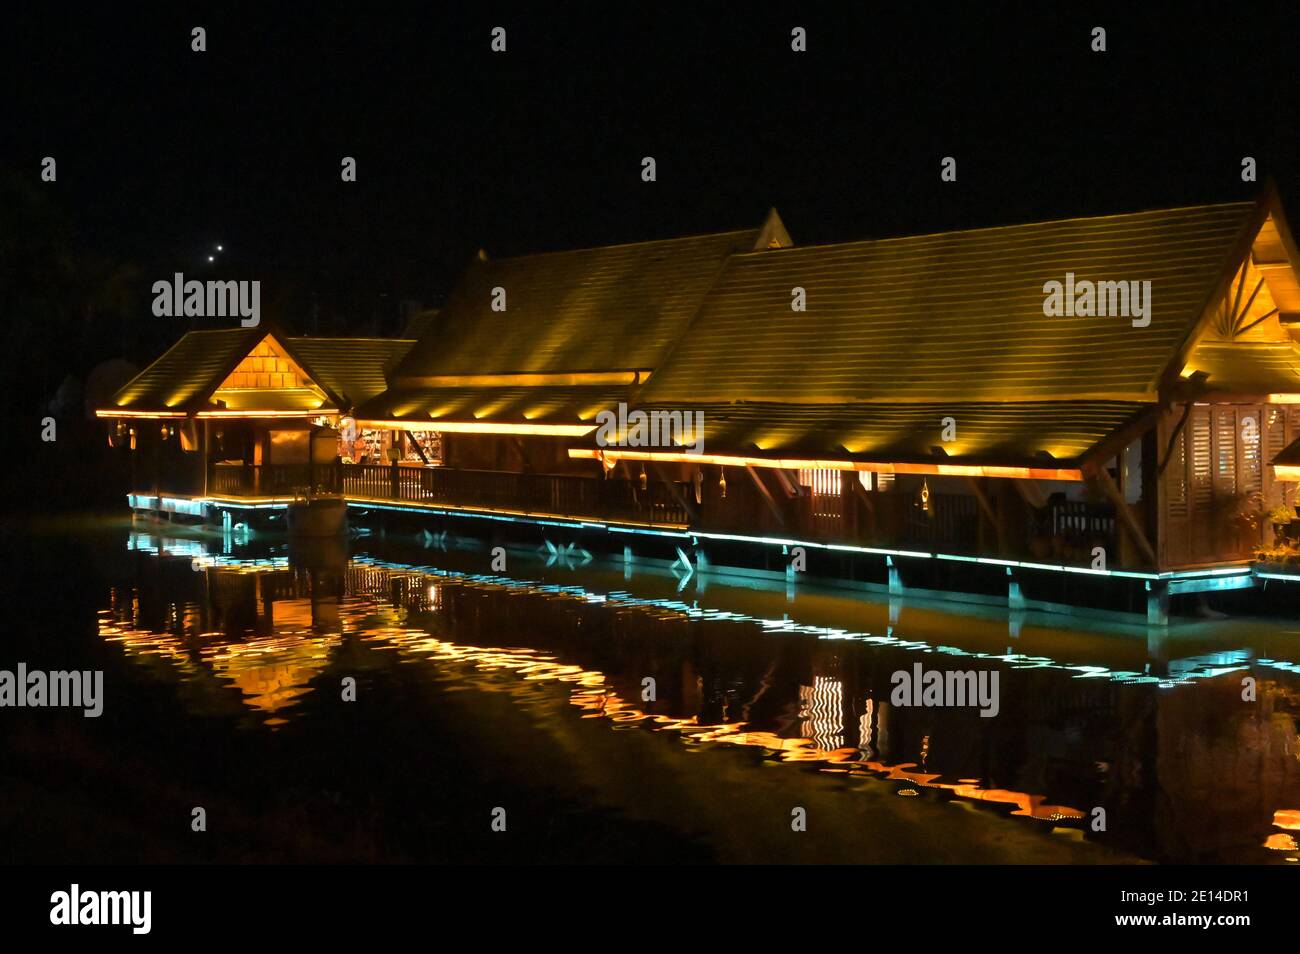 Les structures du marché de nuit de Gaozhuang et plus particulièrement ses les rues commerçantes sont intéressantes sur le plan architectural et éclairées dans des couleurs éclatantes Banque D'Images